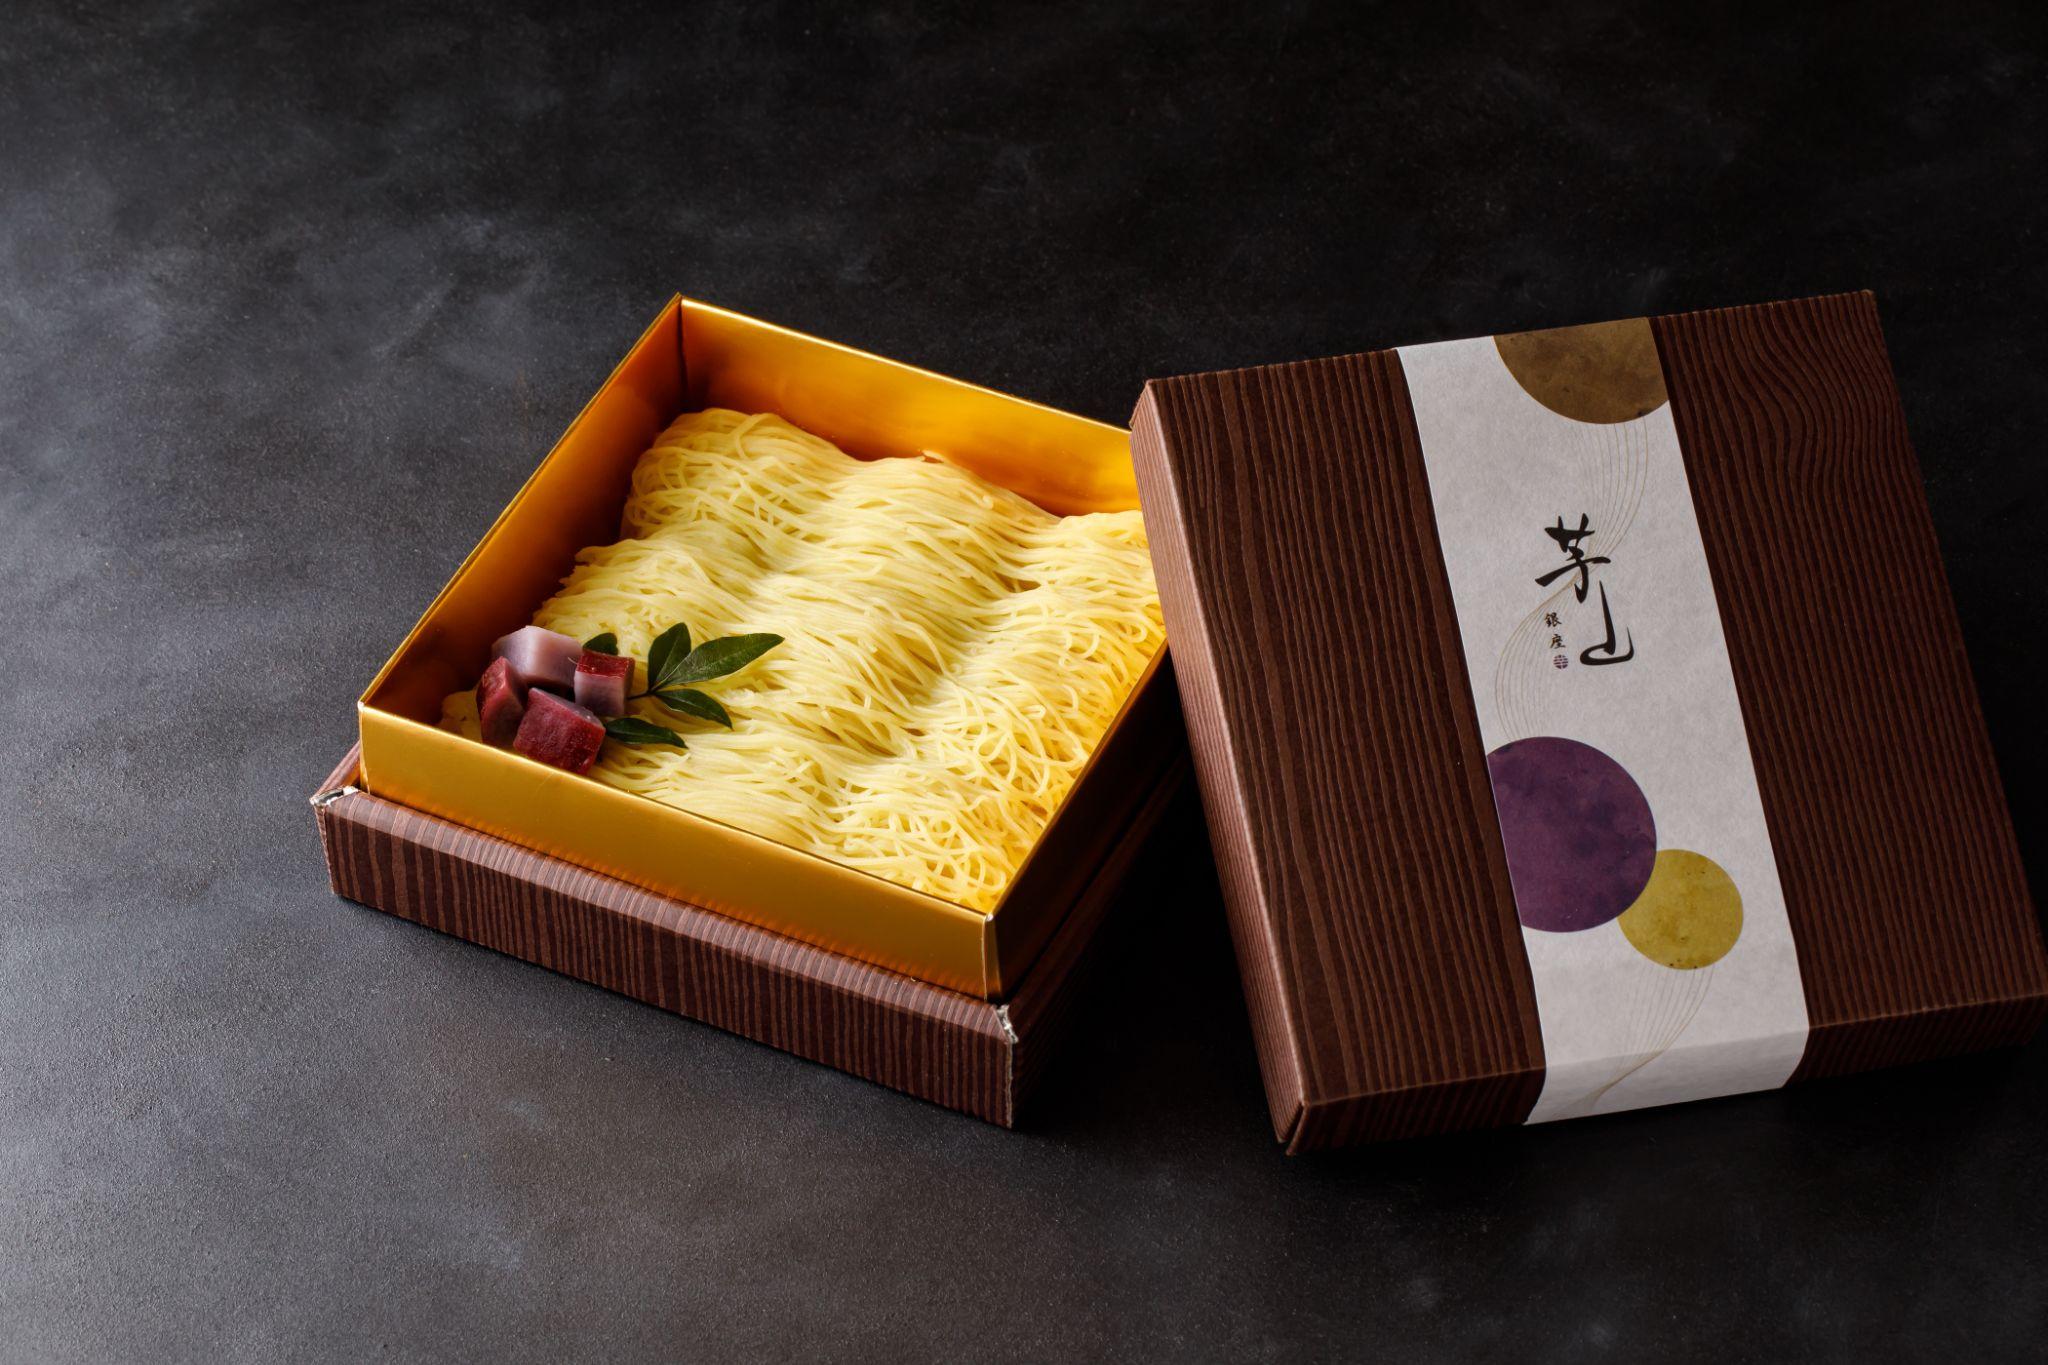 地瓜在東京變時尚了 登堂入味甜品店 創造全新味覺視覺體驗+228